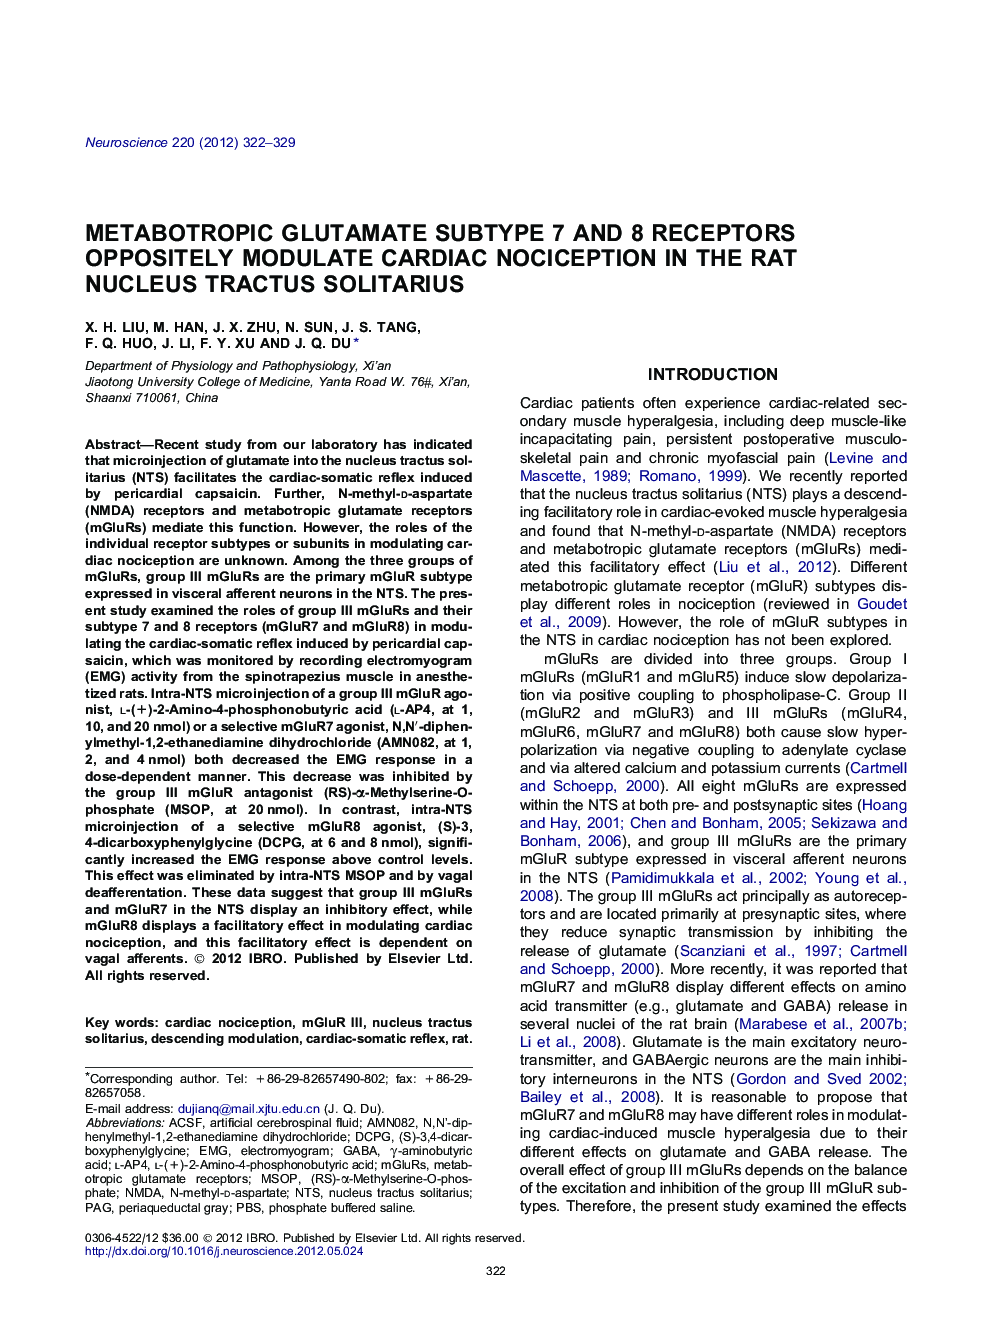 Metabotropic glutamate subtype 7 and 8 receptors oppositely modulate cardiac nociception in the rat nucleus tractus solitarius